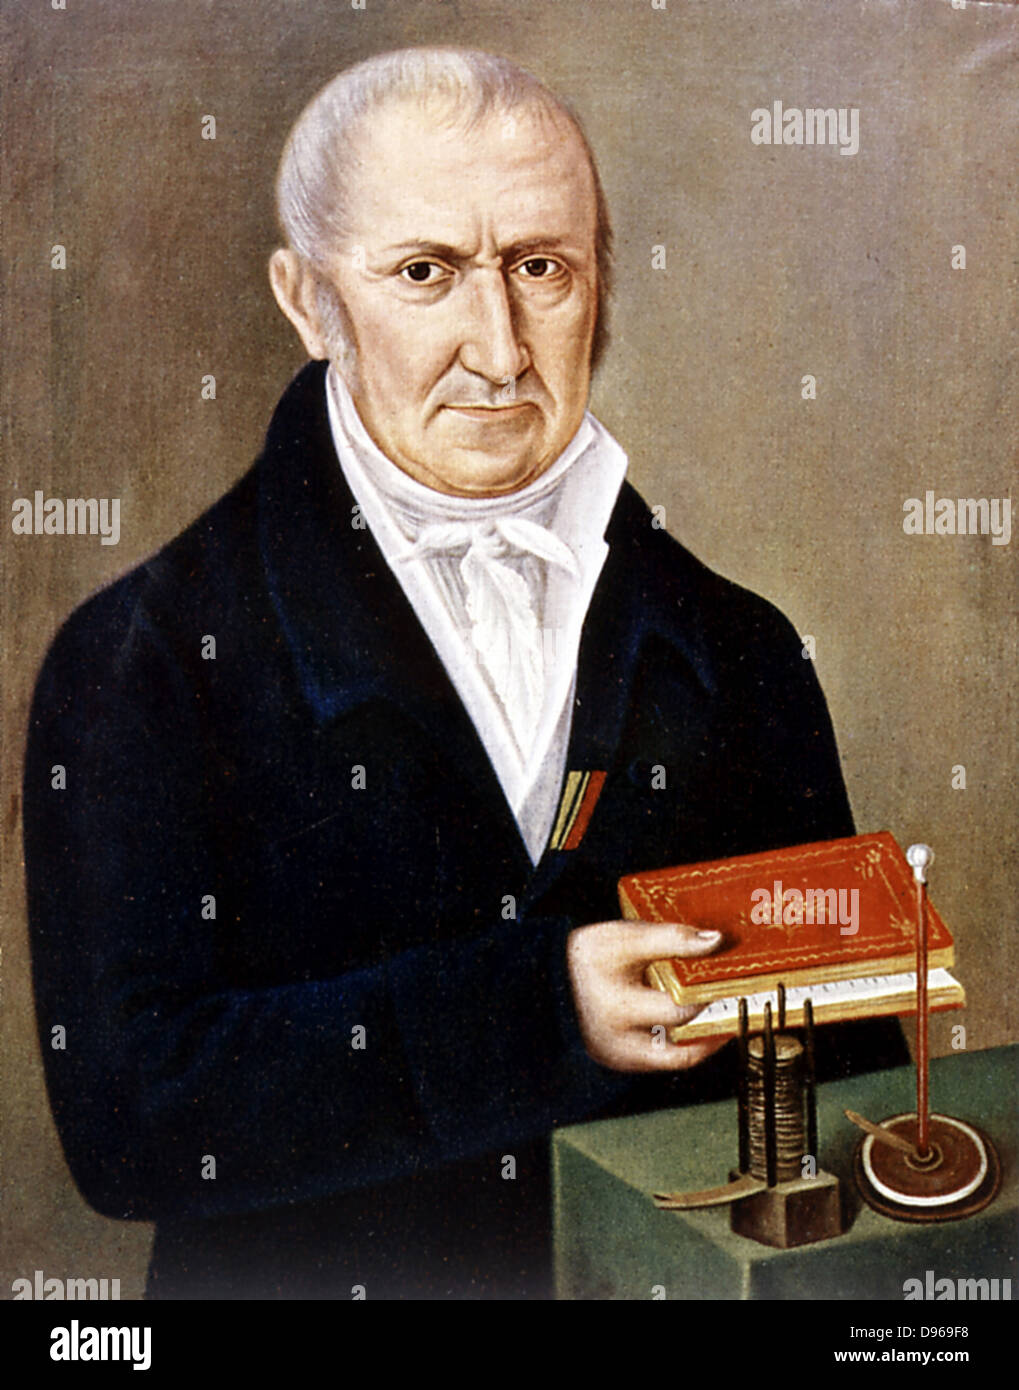 Alessandro Volta (1745-1827) italienischer Physiker. Auf dem Tisch sind zwei seiner Erfindungen, die Voltasche Säule (nassbatterie) auf der linken und electrophorus, einer Vorrichtung, die elektrostatische Aufladung durch Induktion. Seinen Namen Einheit der elektrischen Potentialdifferenz, Volt gegeben. Stockfoto